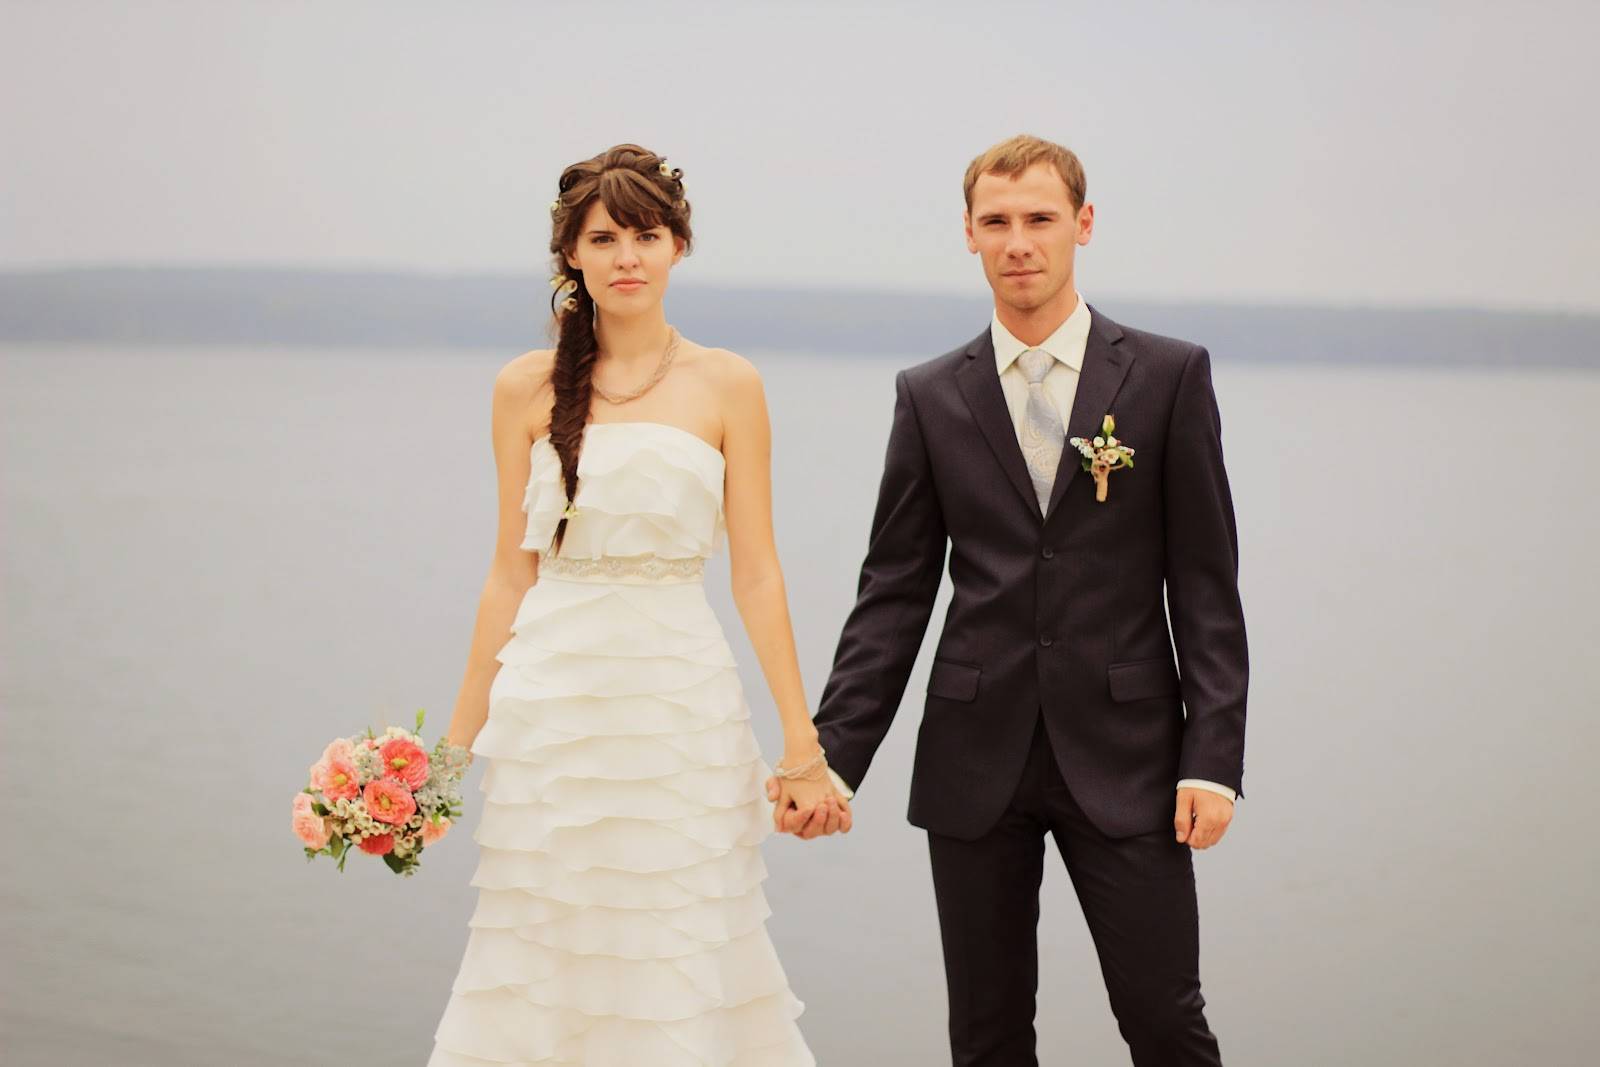 Как выбрать свадебное платье невесте по фигуре? советы